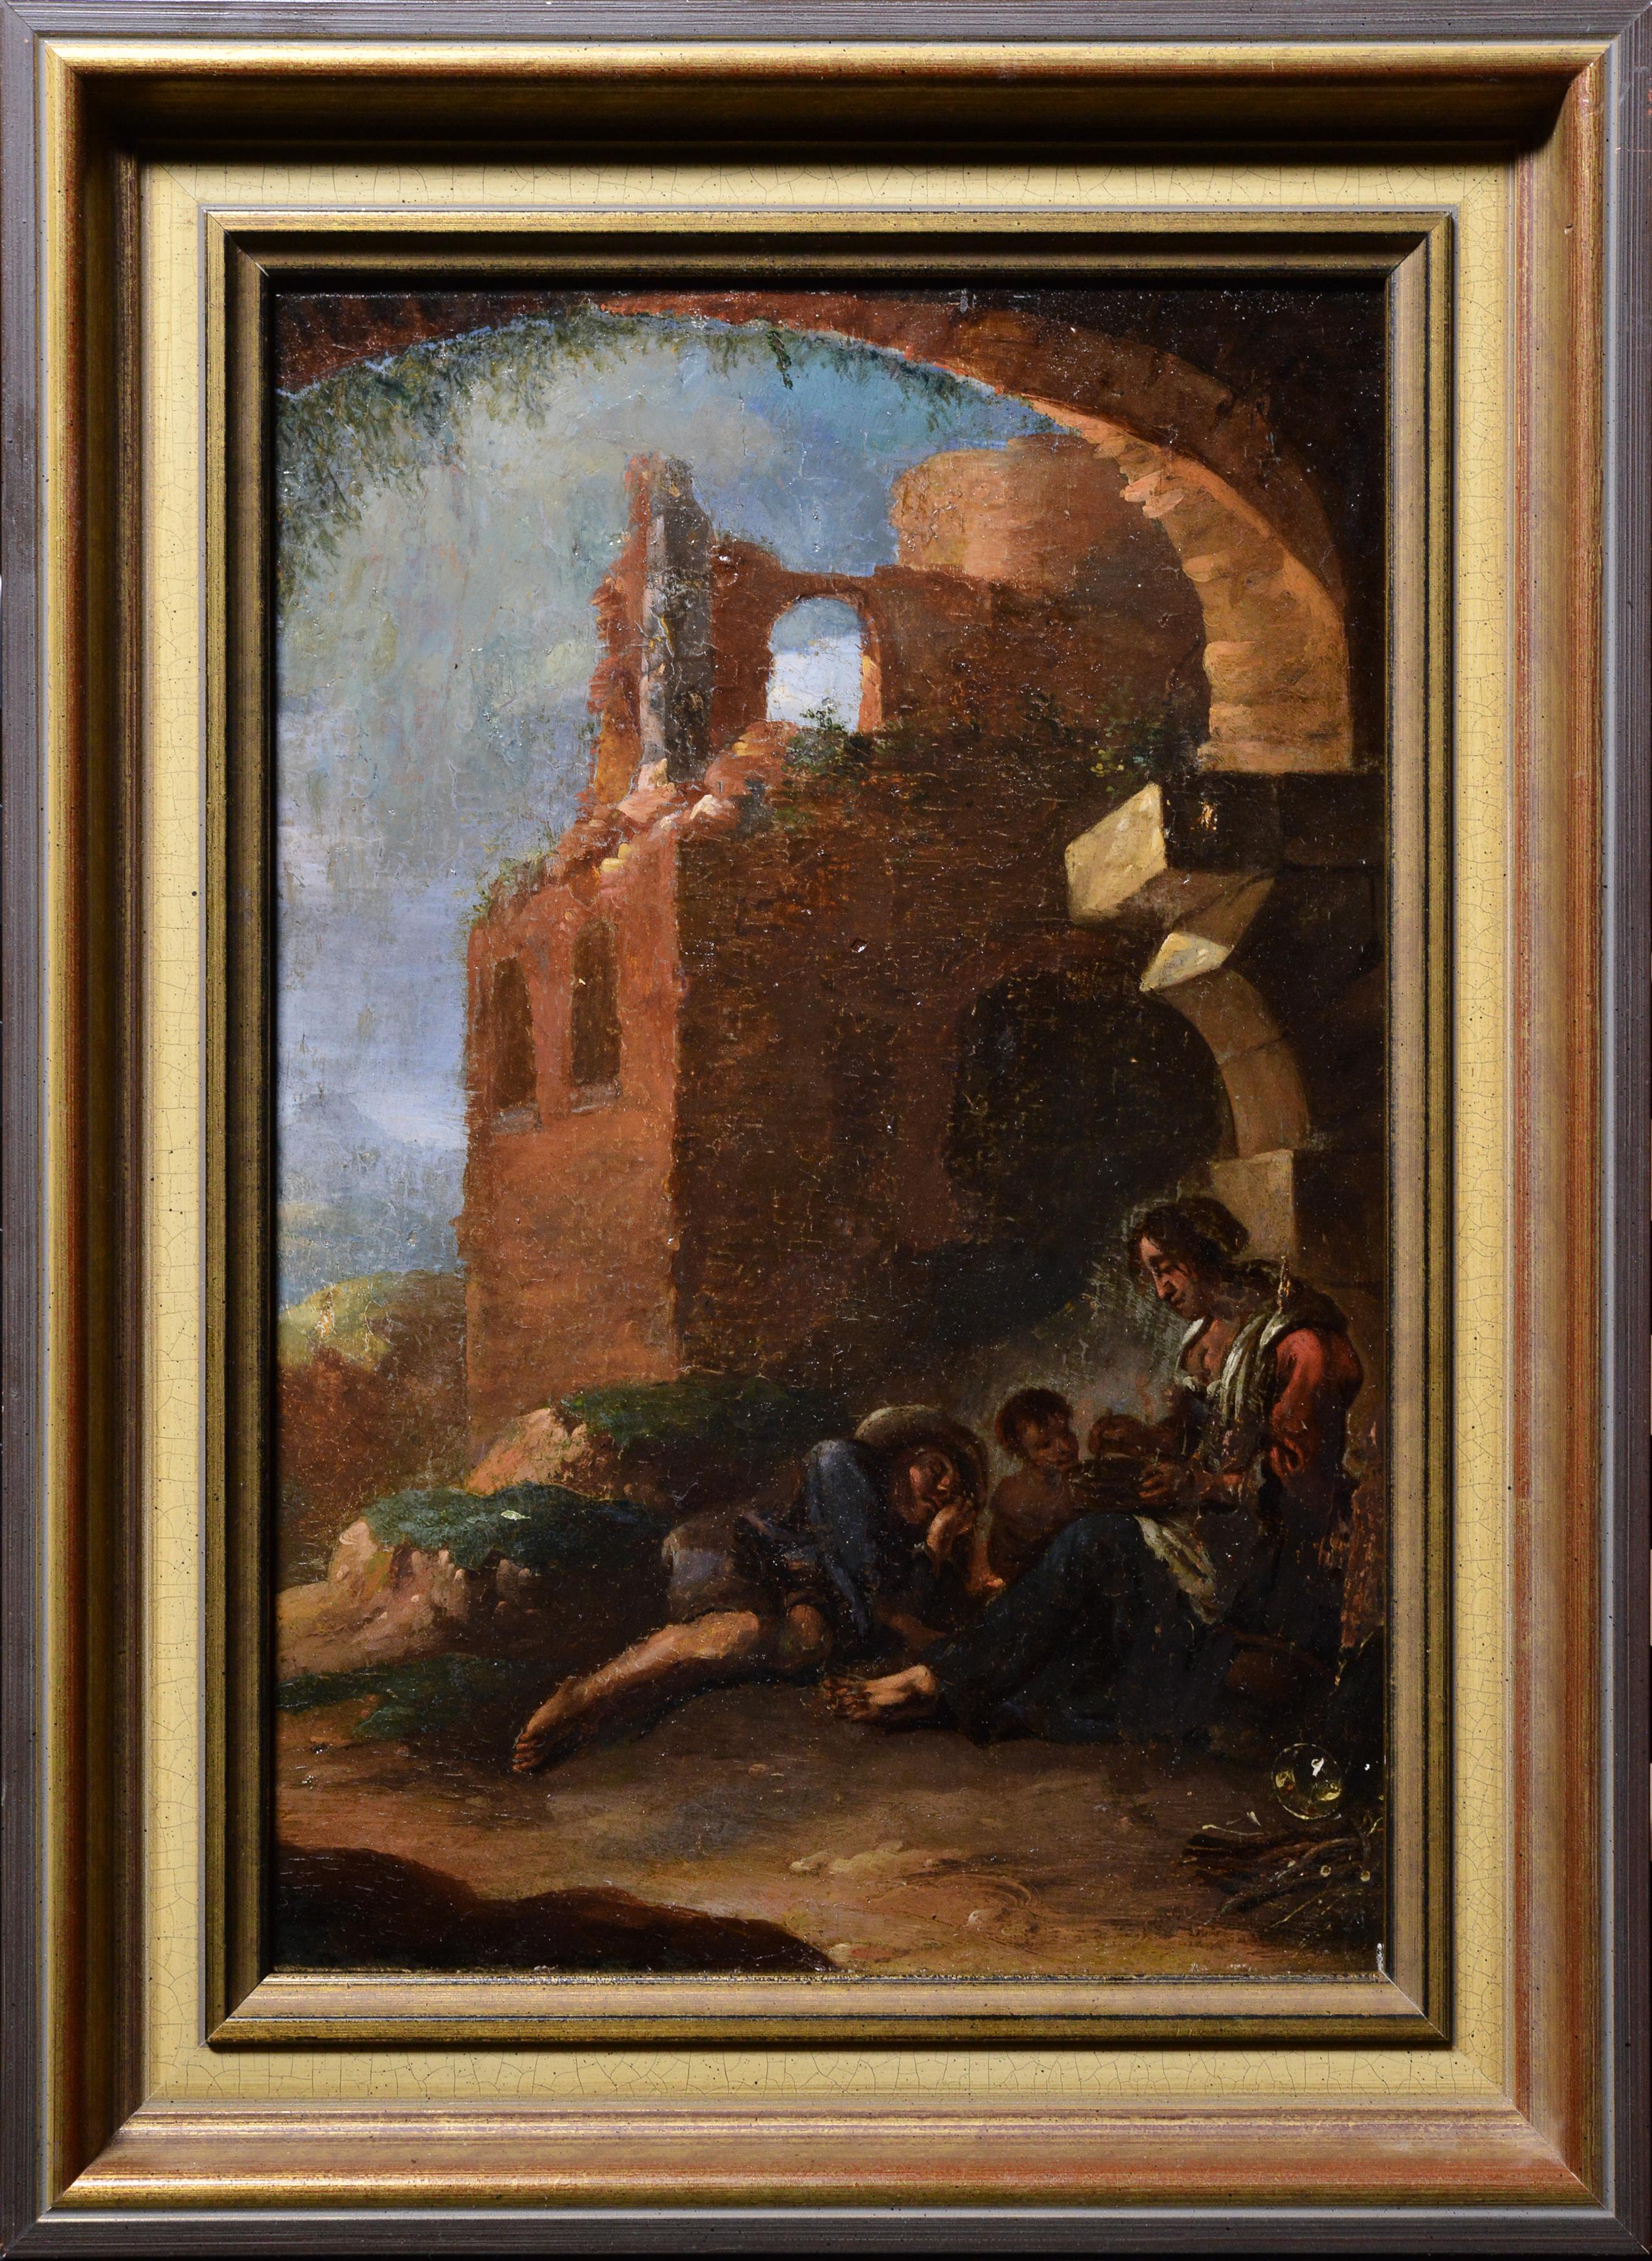 Peinture à l'huile italienne du 18ème siècle, Grotto in Ruins, scène de rue avec famille en train de se reposer